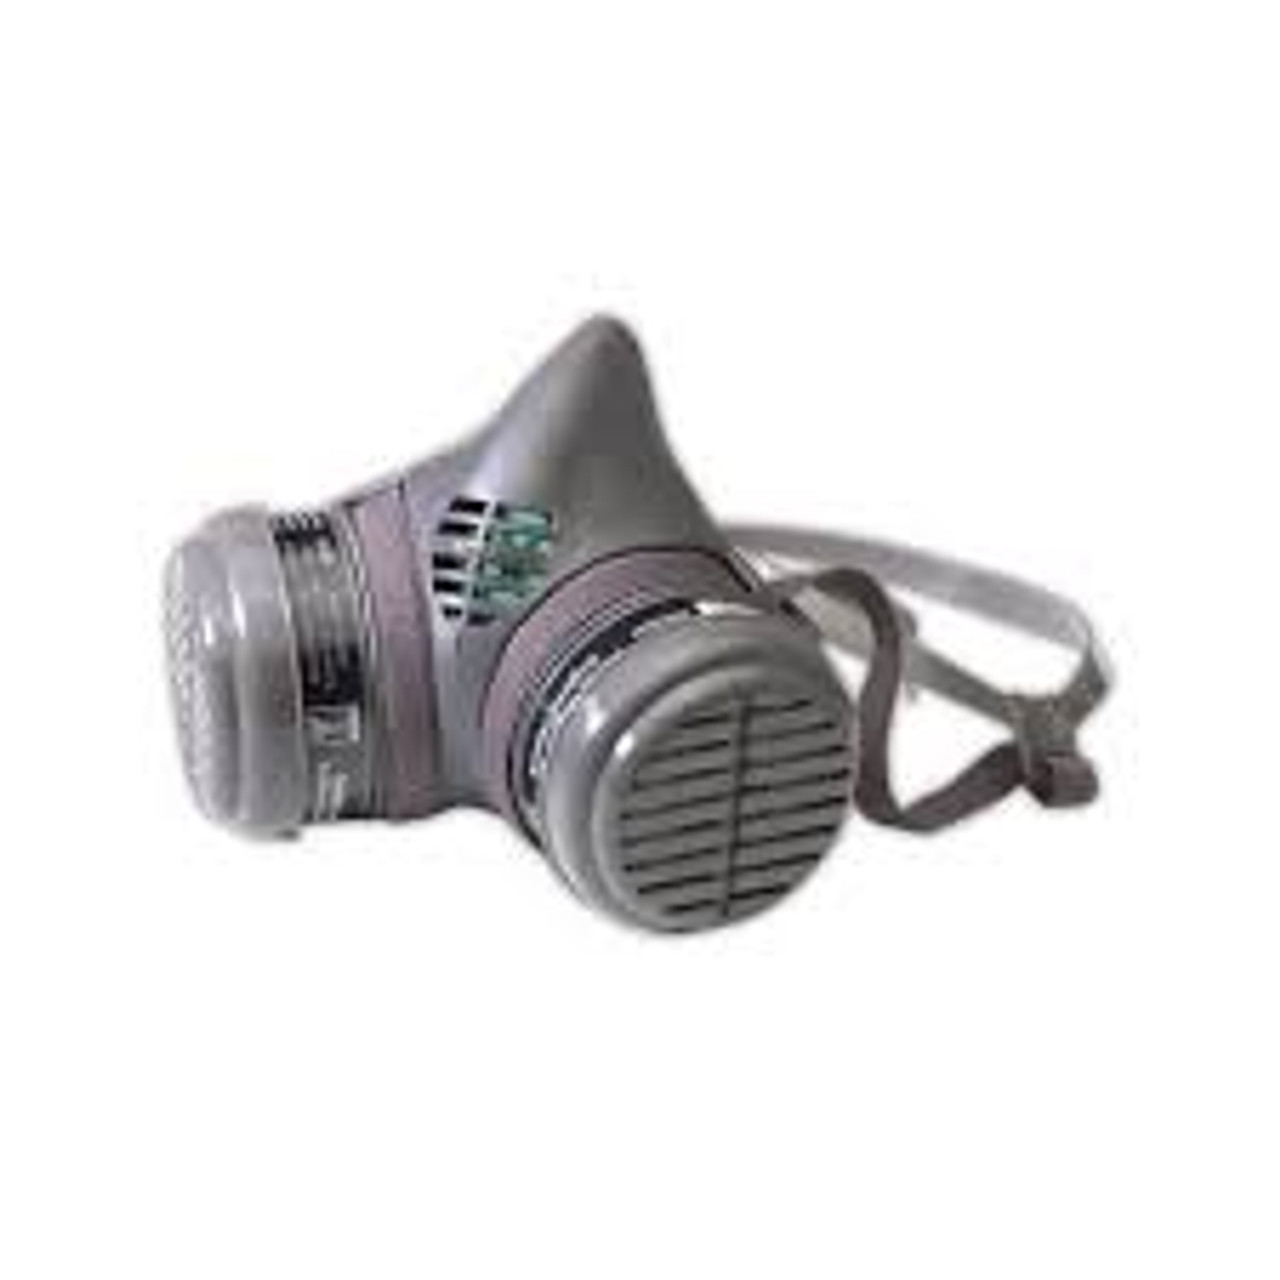 Respirateur demi-masque série 8000 assemblé, Élastomère/Thermoplastique, Taille Grand 8113N